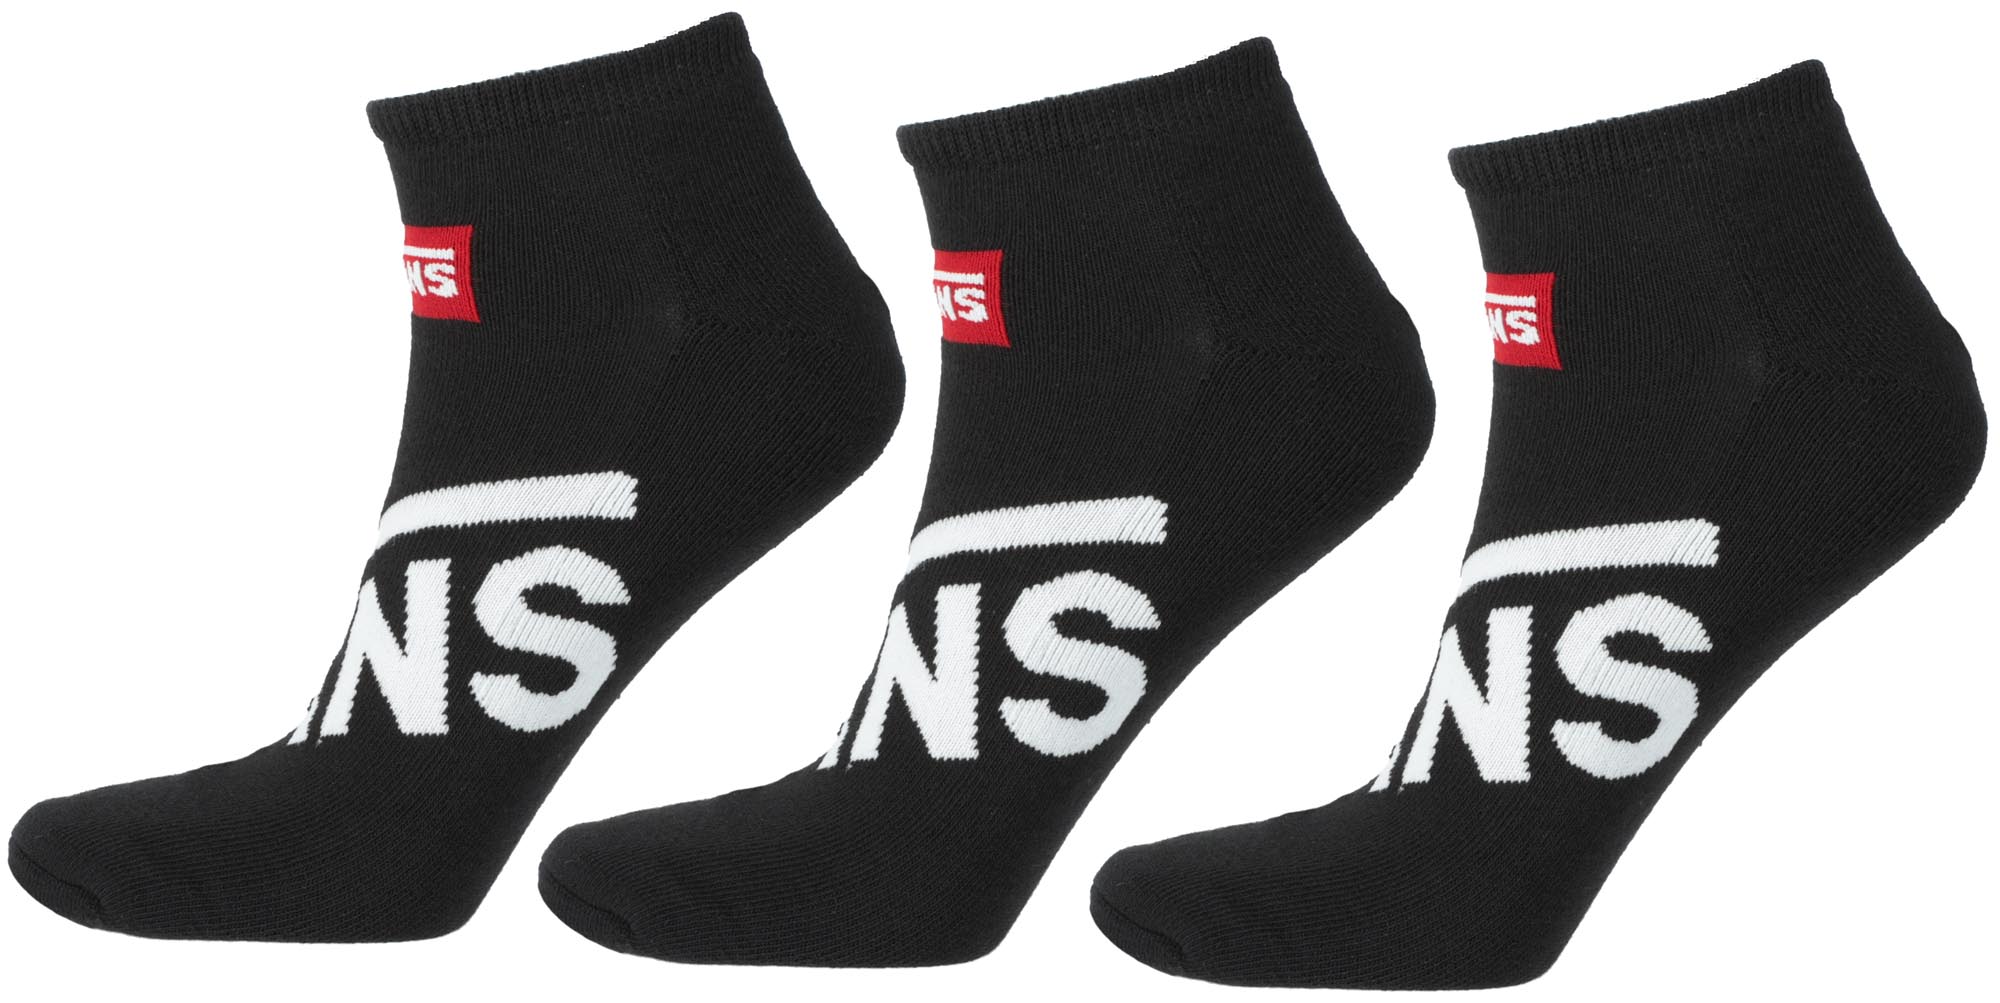 Men’s ankle socks